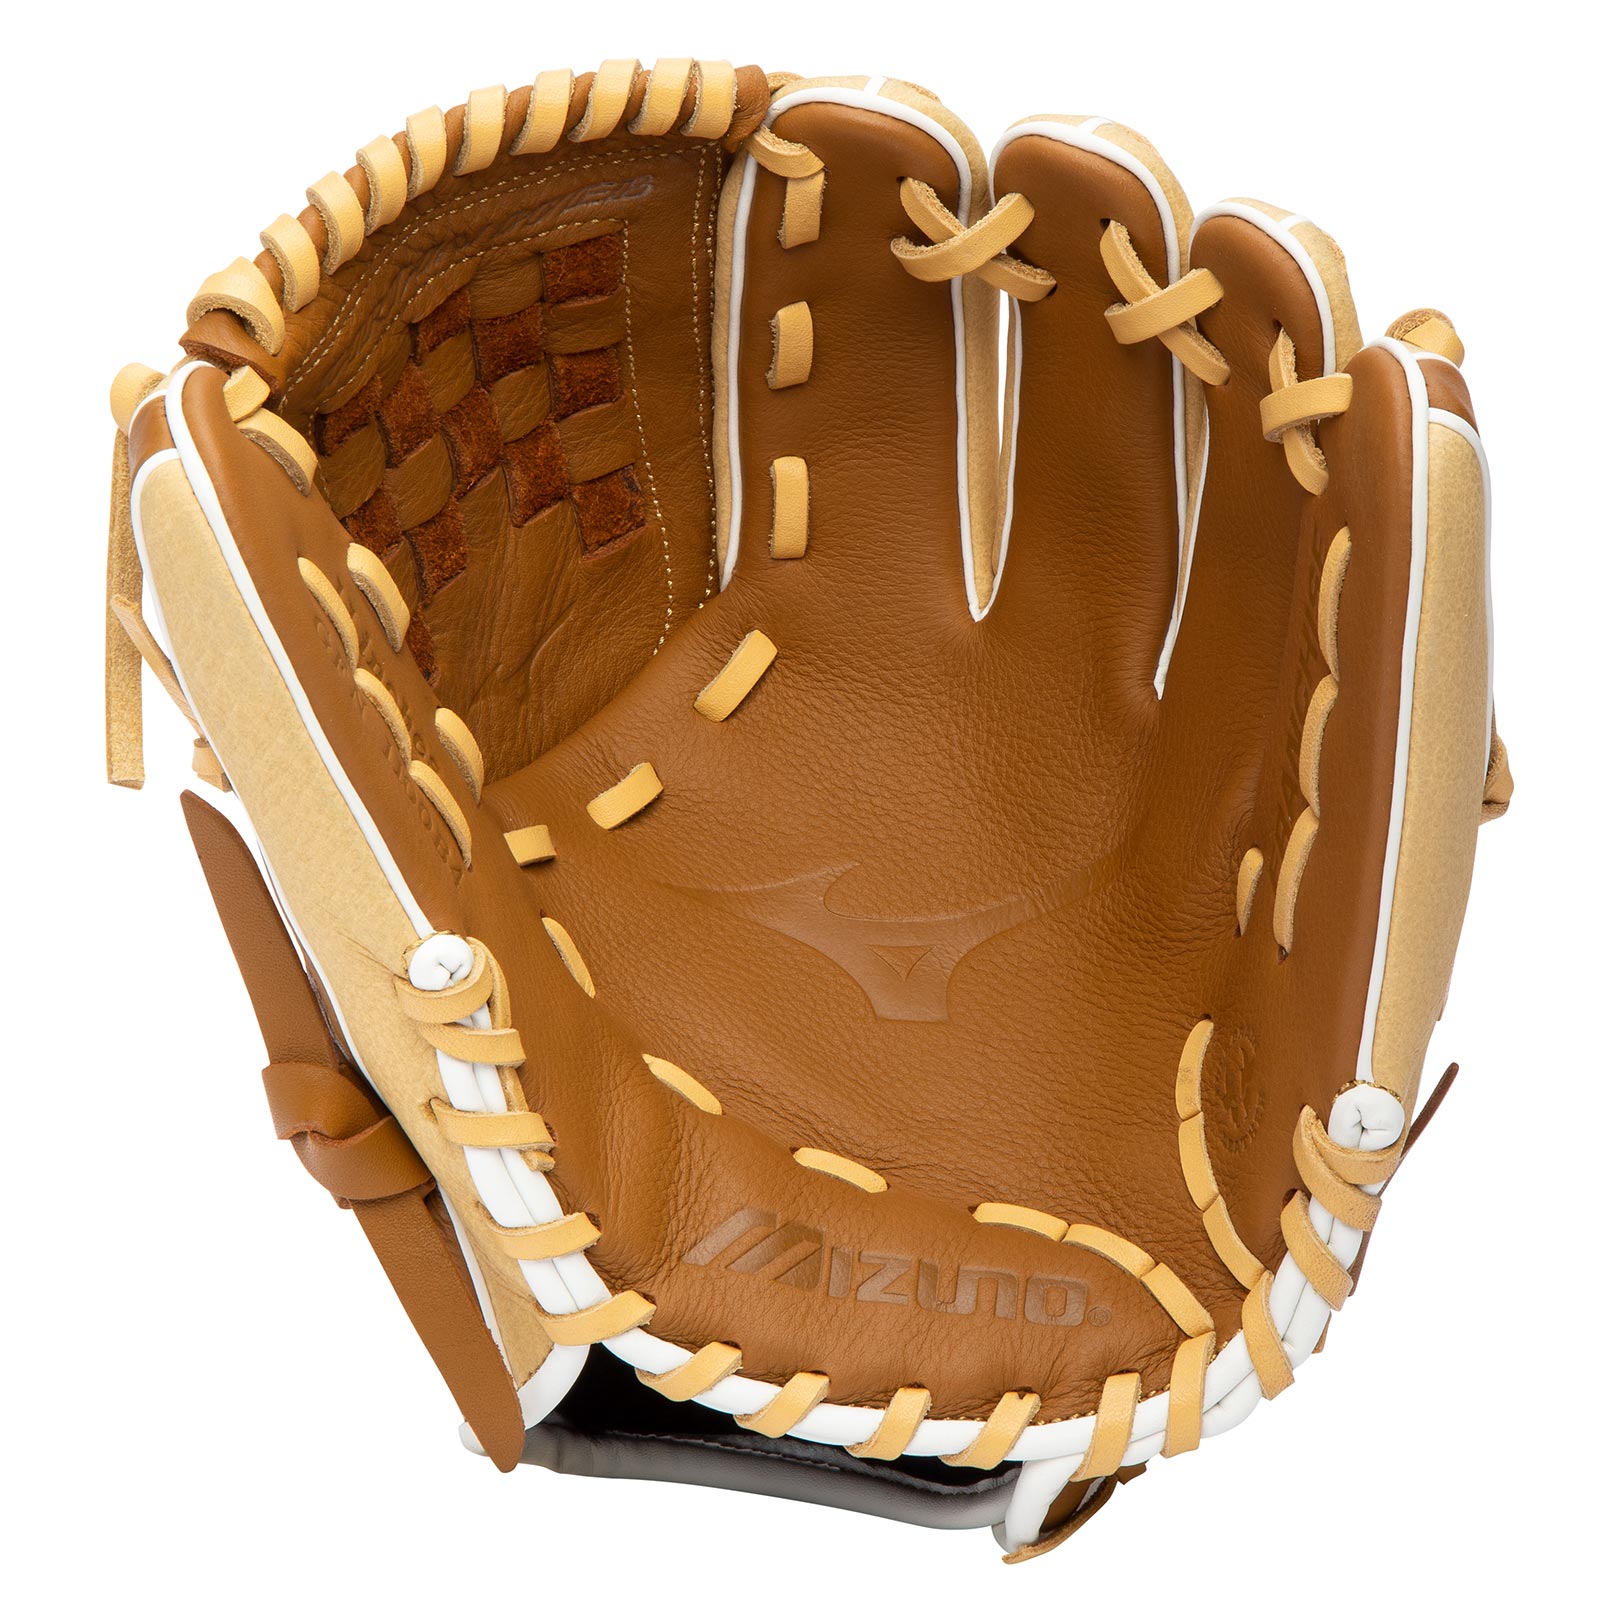 Mizuno Franchise Baseball GFN1100B4 11" Baseball Glove